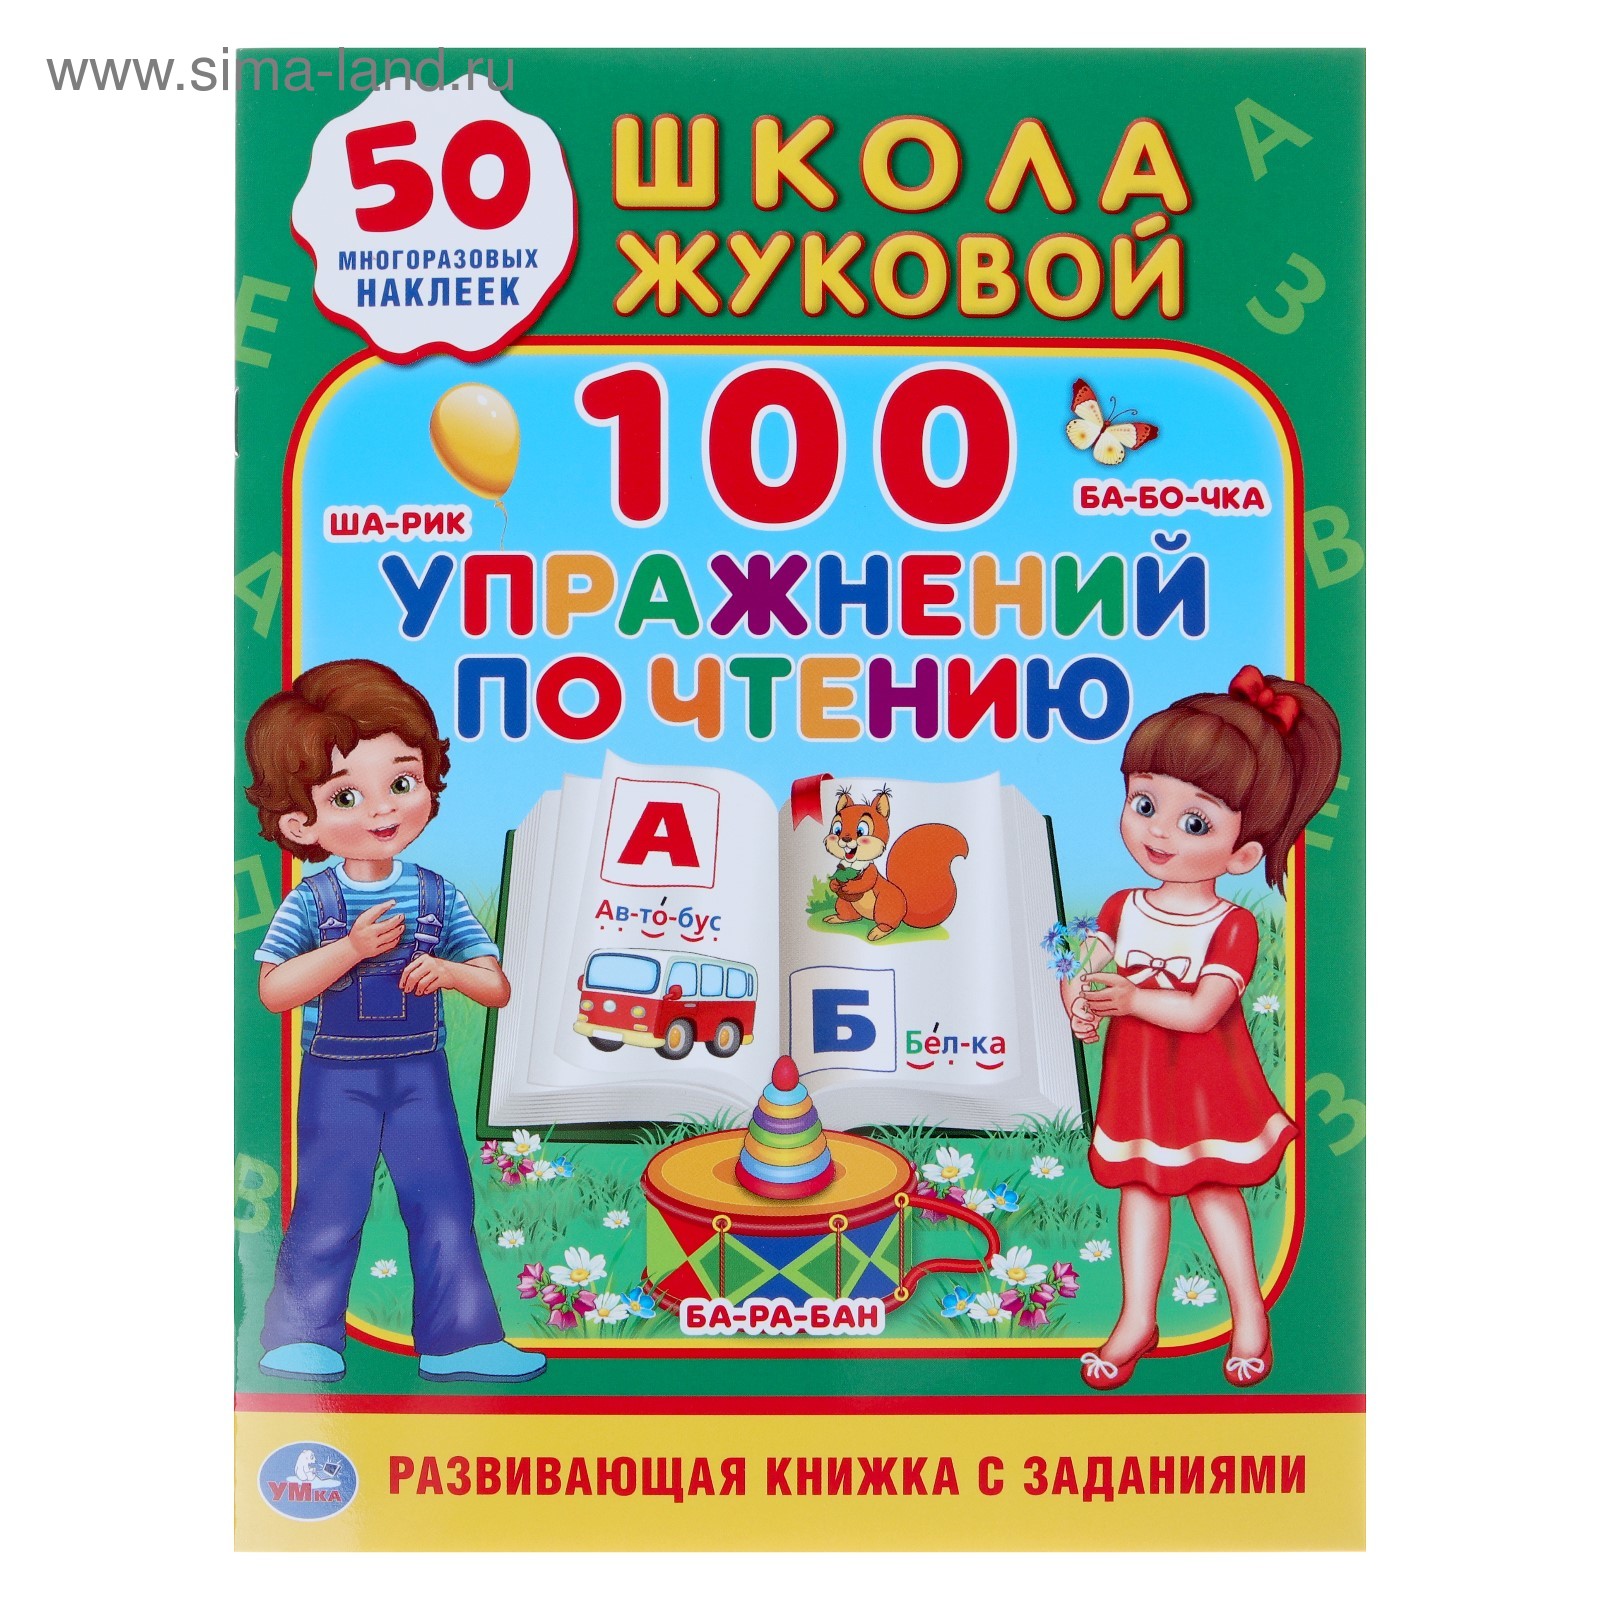 100 упражнений по чтению Развивающая книжка с заданиями Школа Жуковой "Умка"